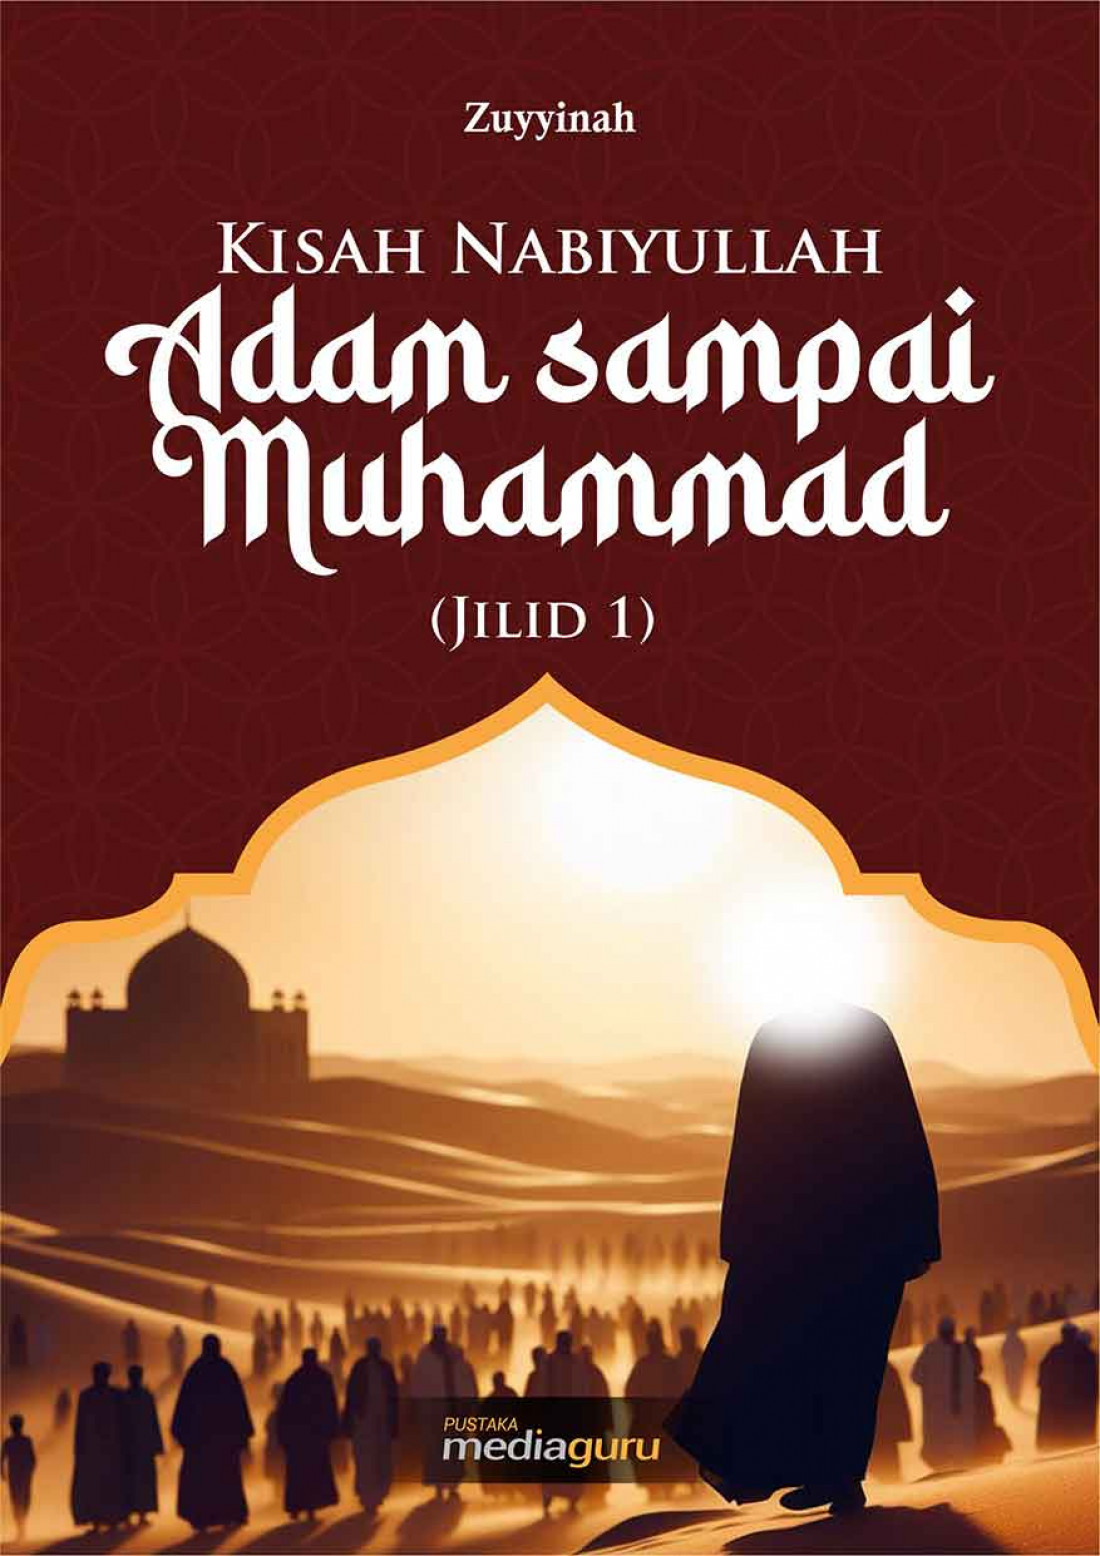 Kisah Nabiyullah Adam Sampai Muhammad Jilid 1